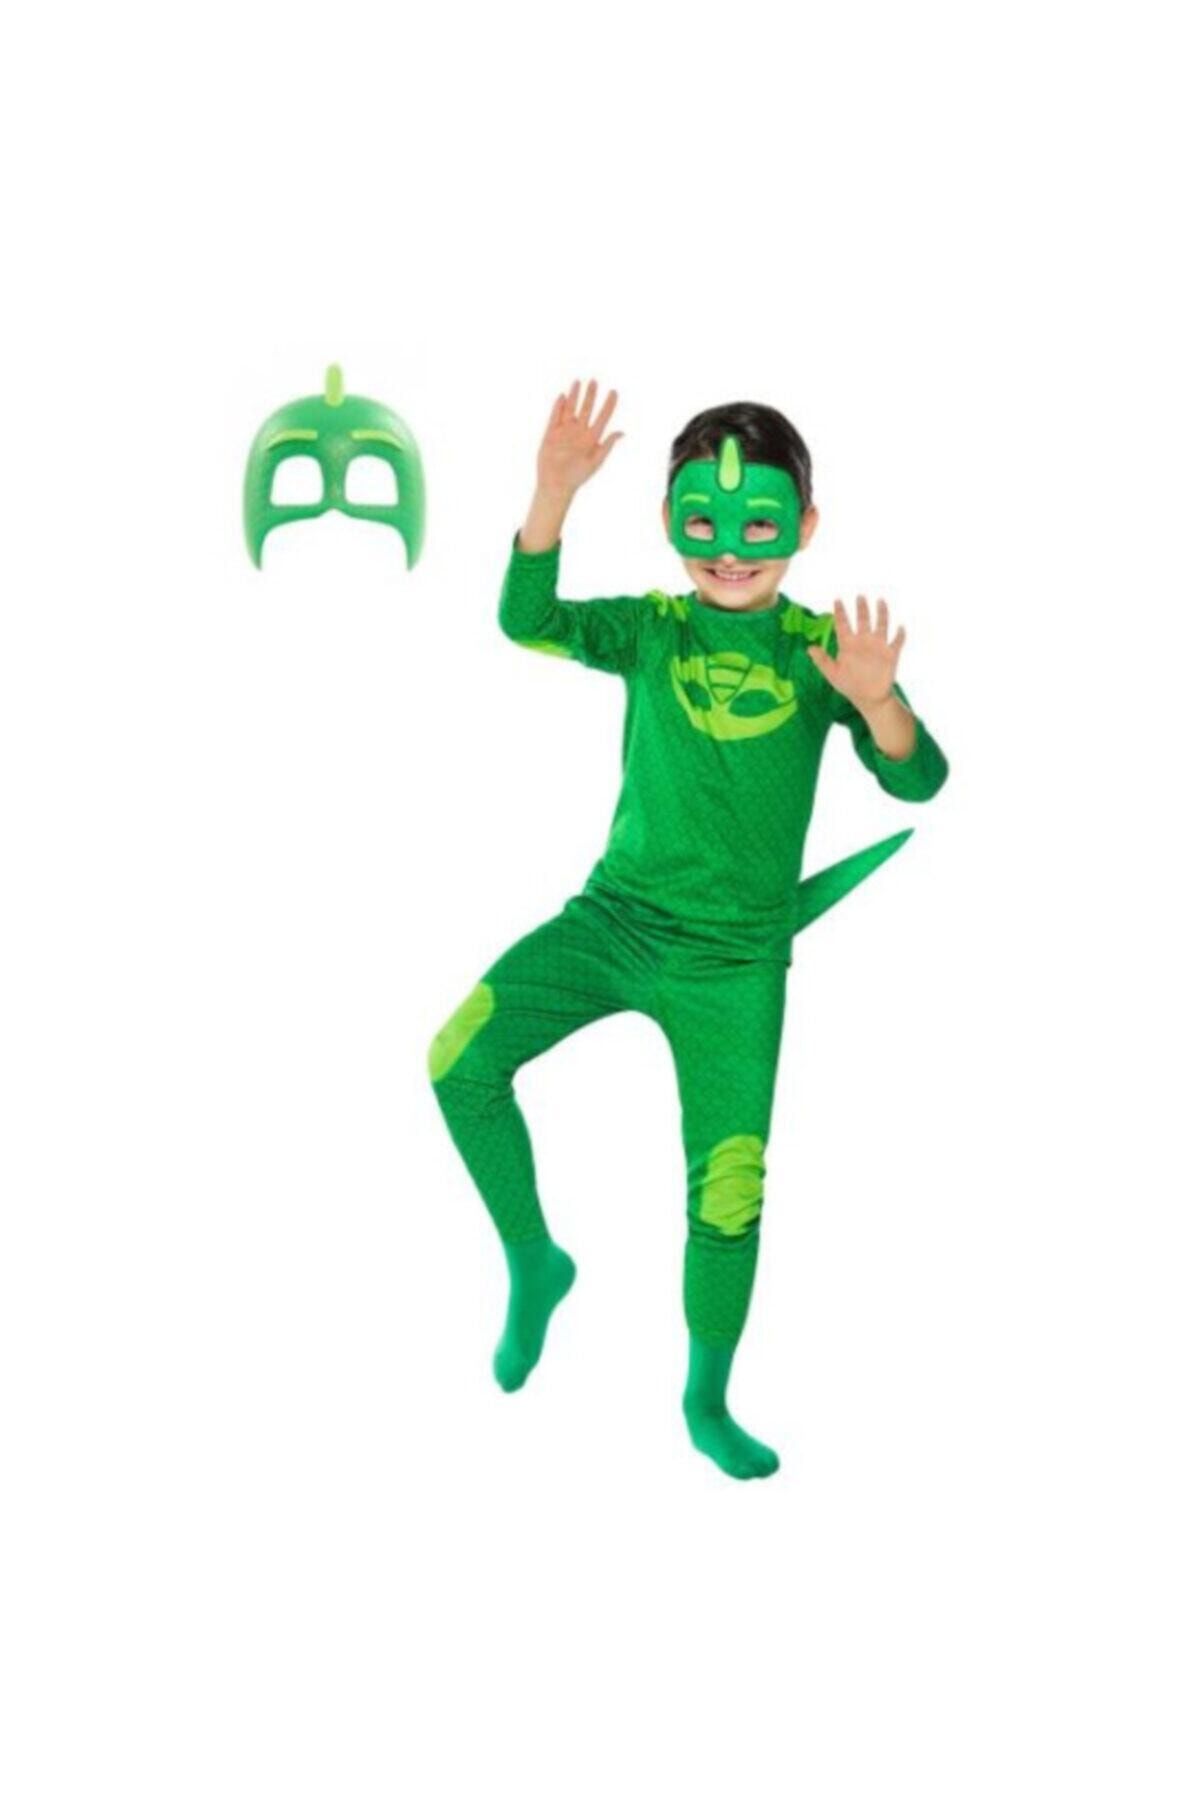 Pj Maskeliler Pijamaskeliler Kertenkele Çocuk Kostüm - Tulum + 2 Adet Maske Set -gekko Owlette Catboy